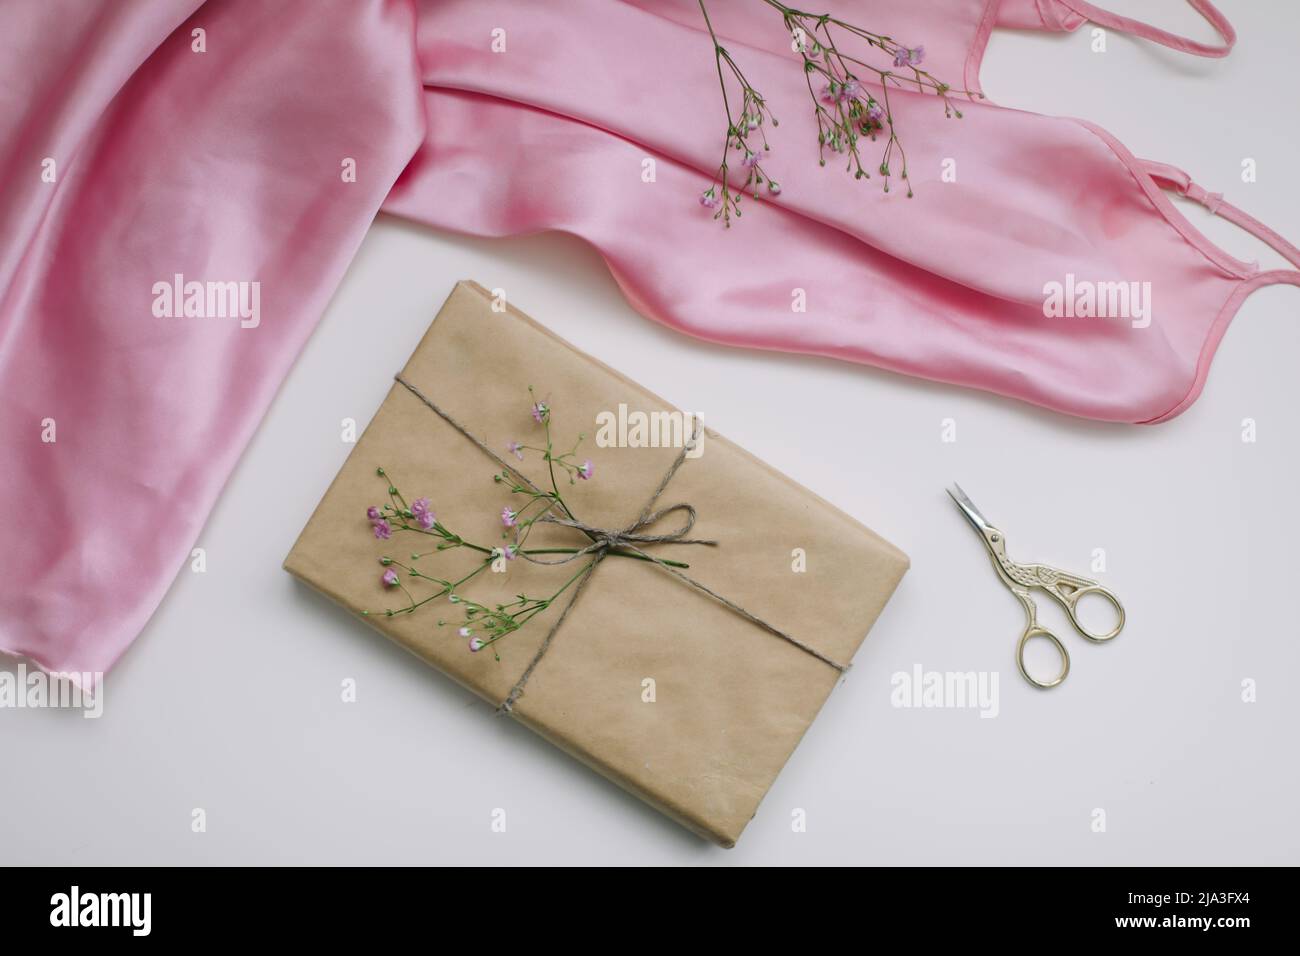 Composition avec tissu en soie rose, cadeau en papier artisanal et fils et ciseaux sur fond blanc. Flat lay, vue de dessus. Concept de loisirs et de loisirs. Banque D'Images